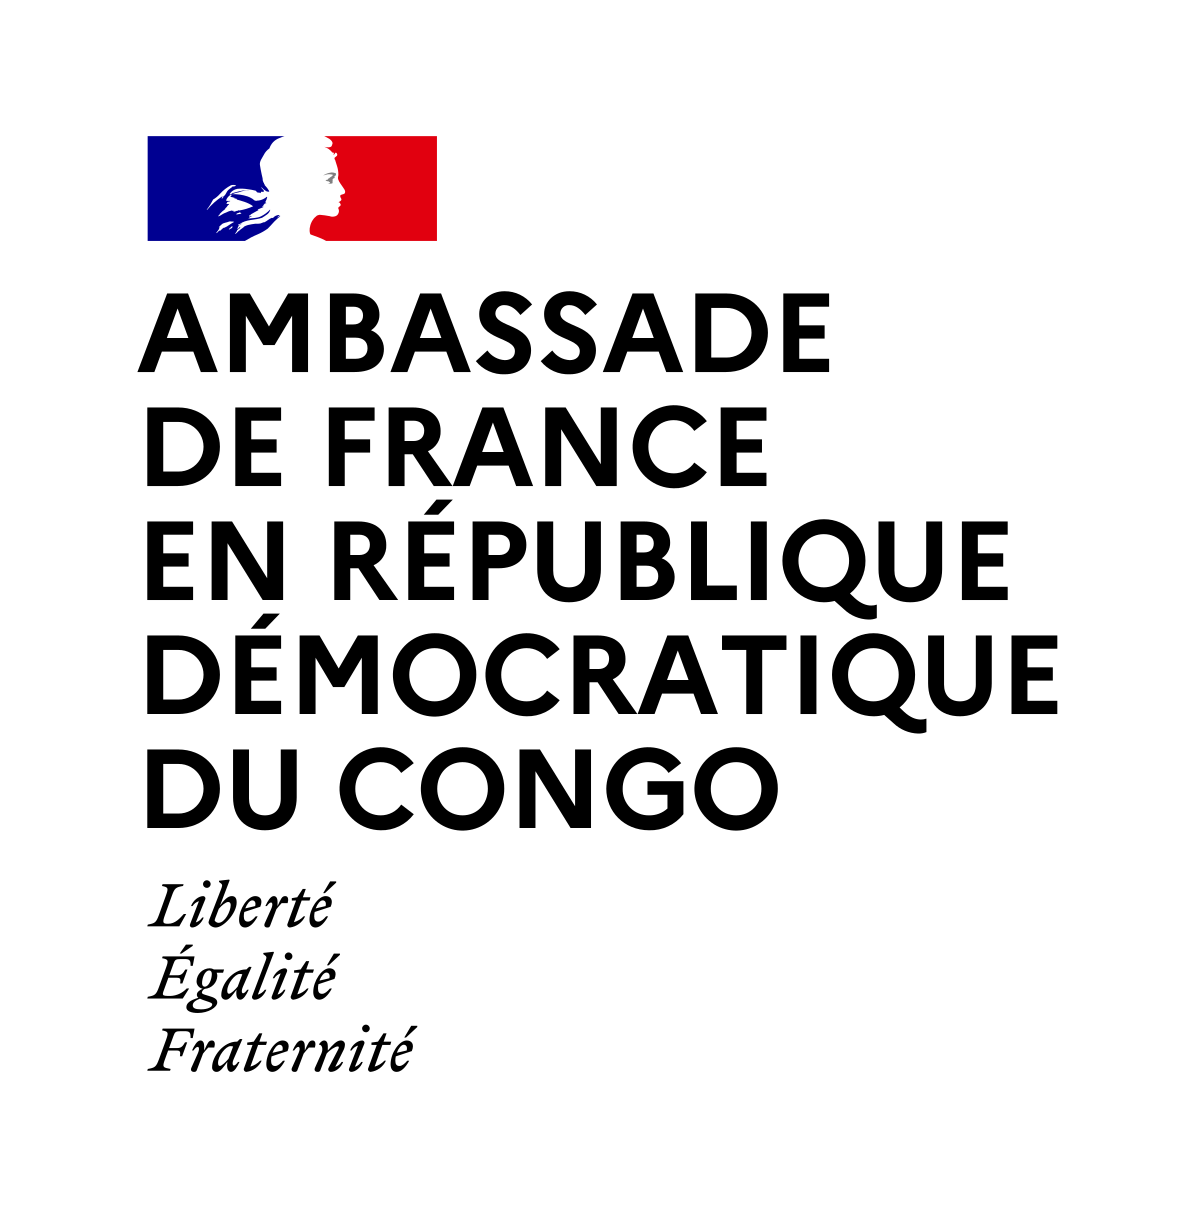 Ambassade company logo